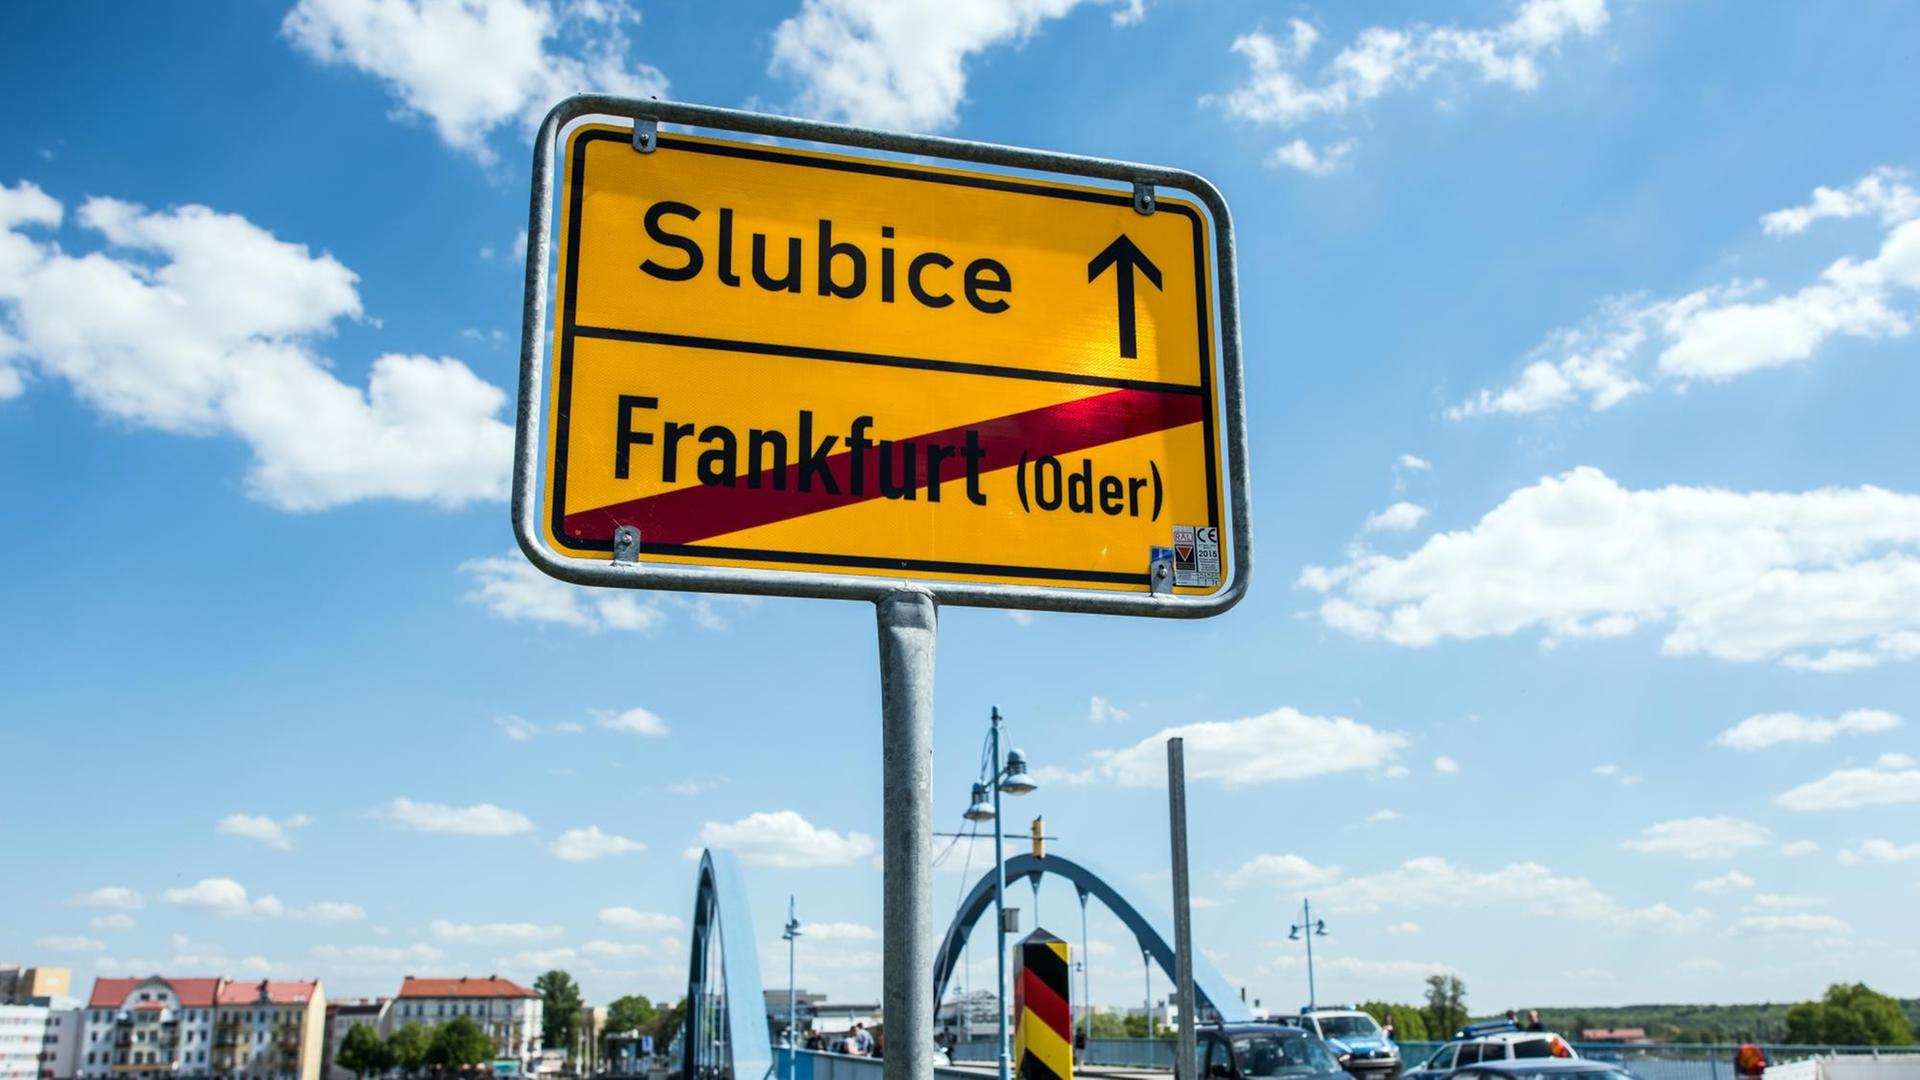 Das Ortsausgangsschild von Frankfurt (Oder) in Brandenburg am Grenzübergang Stadtbrücke zur polnischen Nachbarstadt Slubice